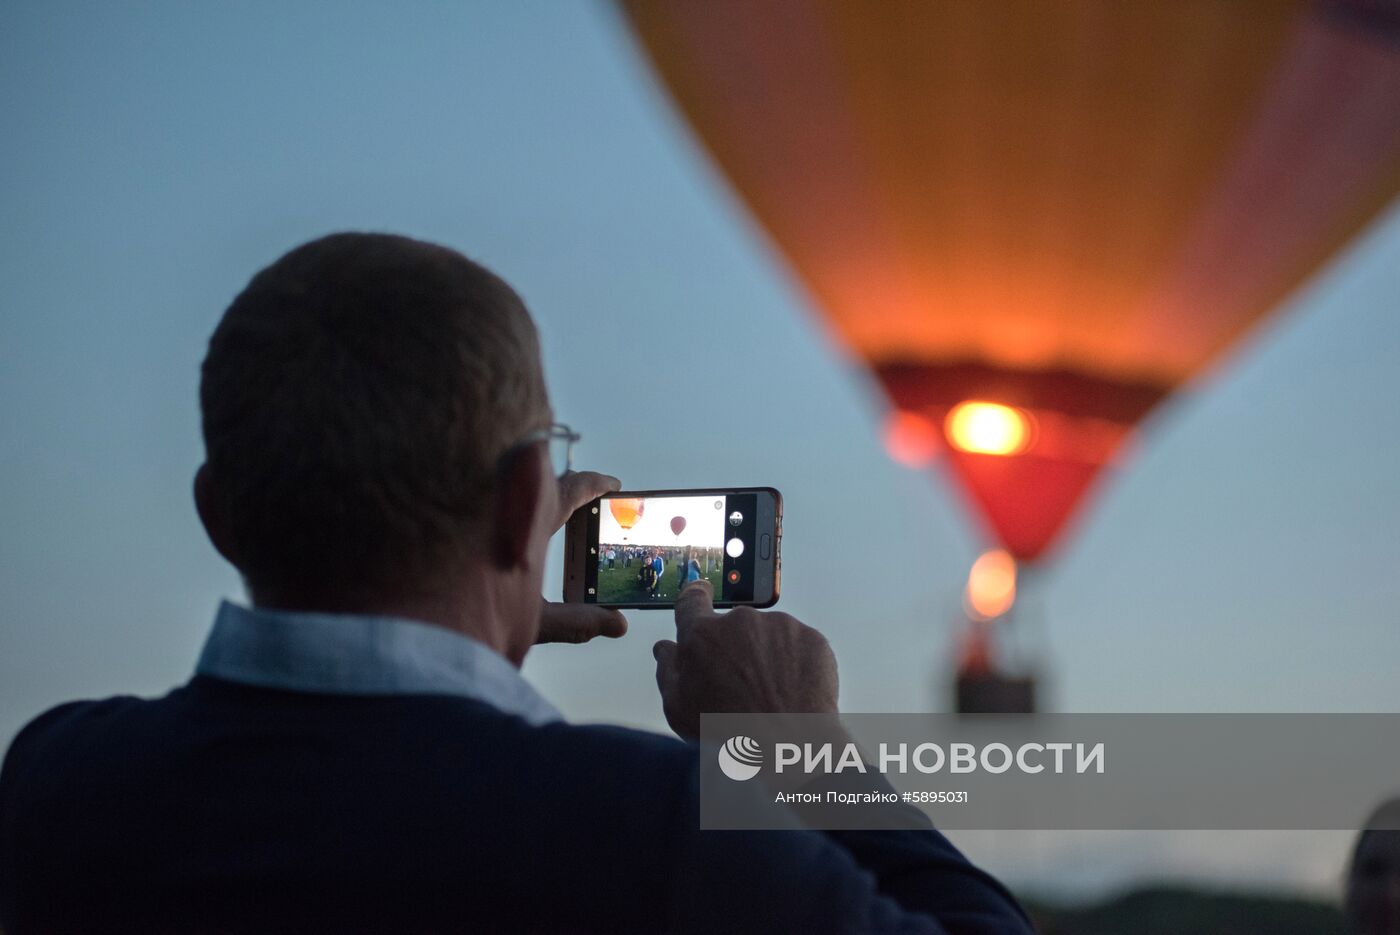 Пиротехнический фестиваль PyroFivePeaks в Ставропольском крае